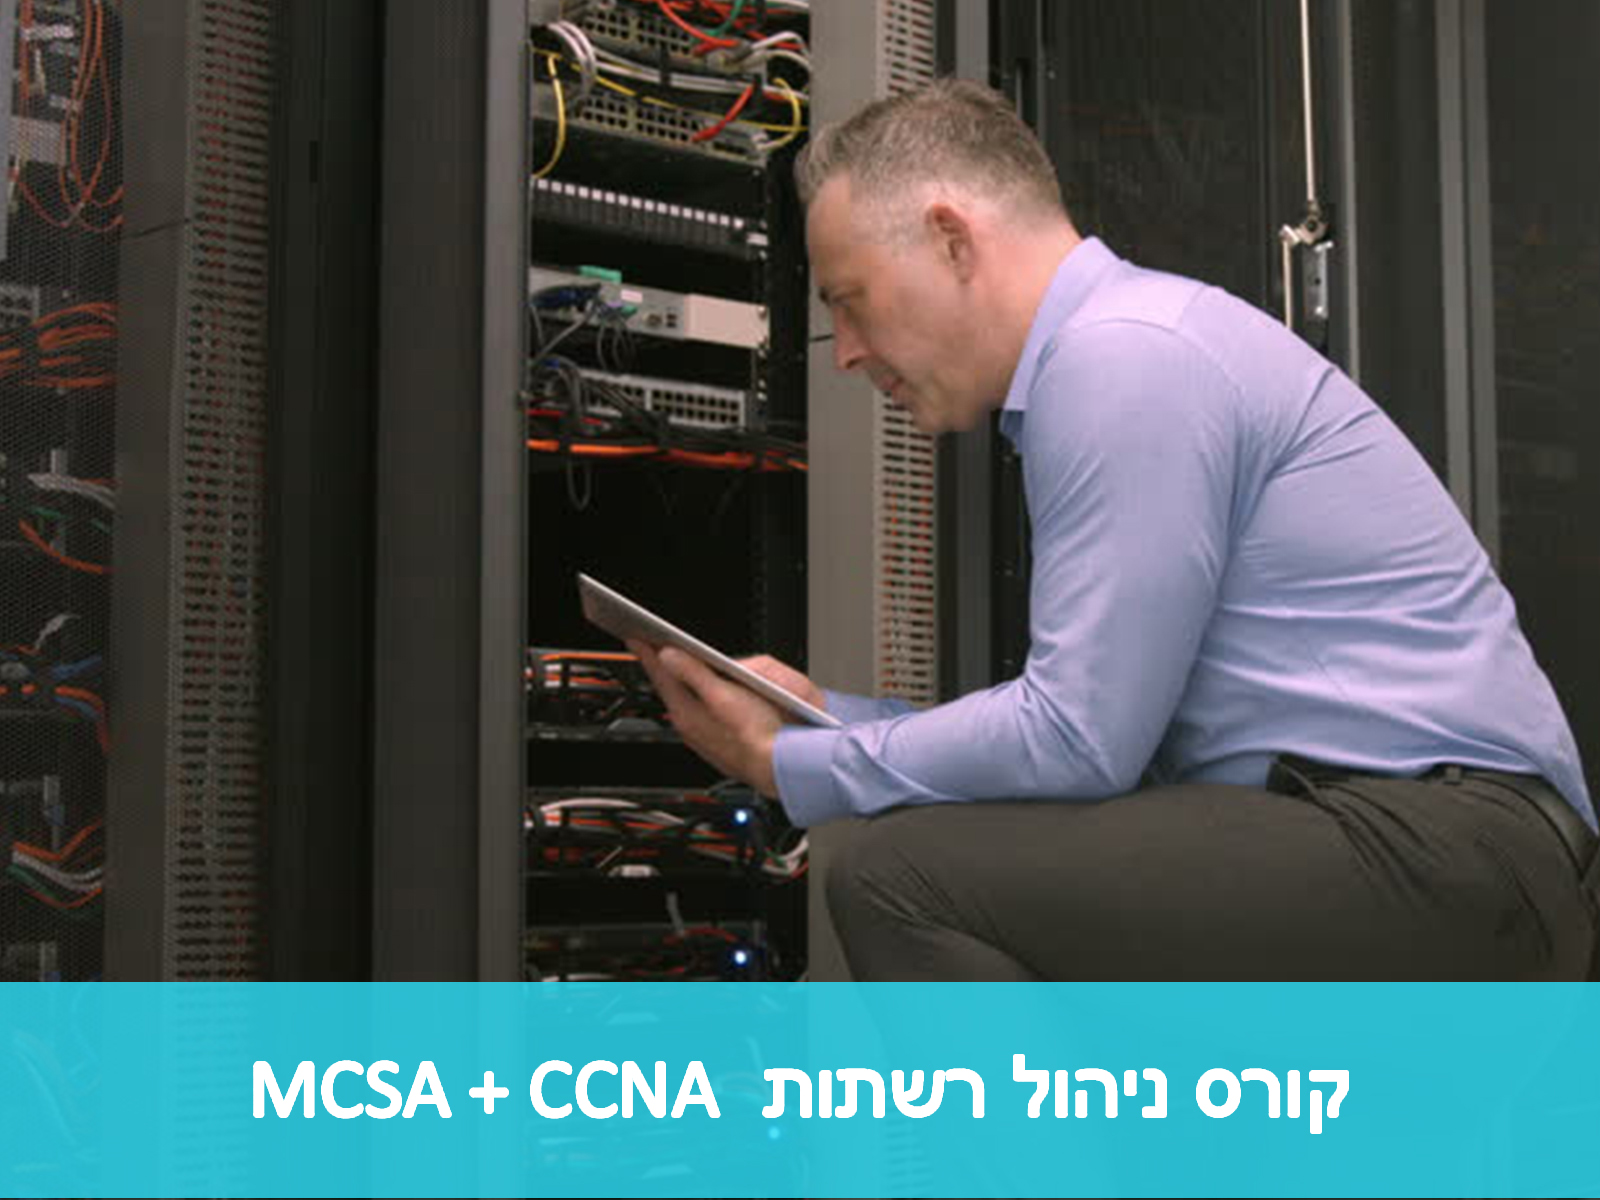 קורס ניהול רשתות MCSA + CCNA